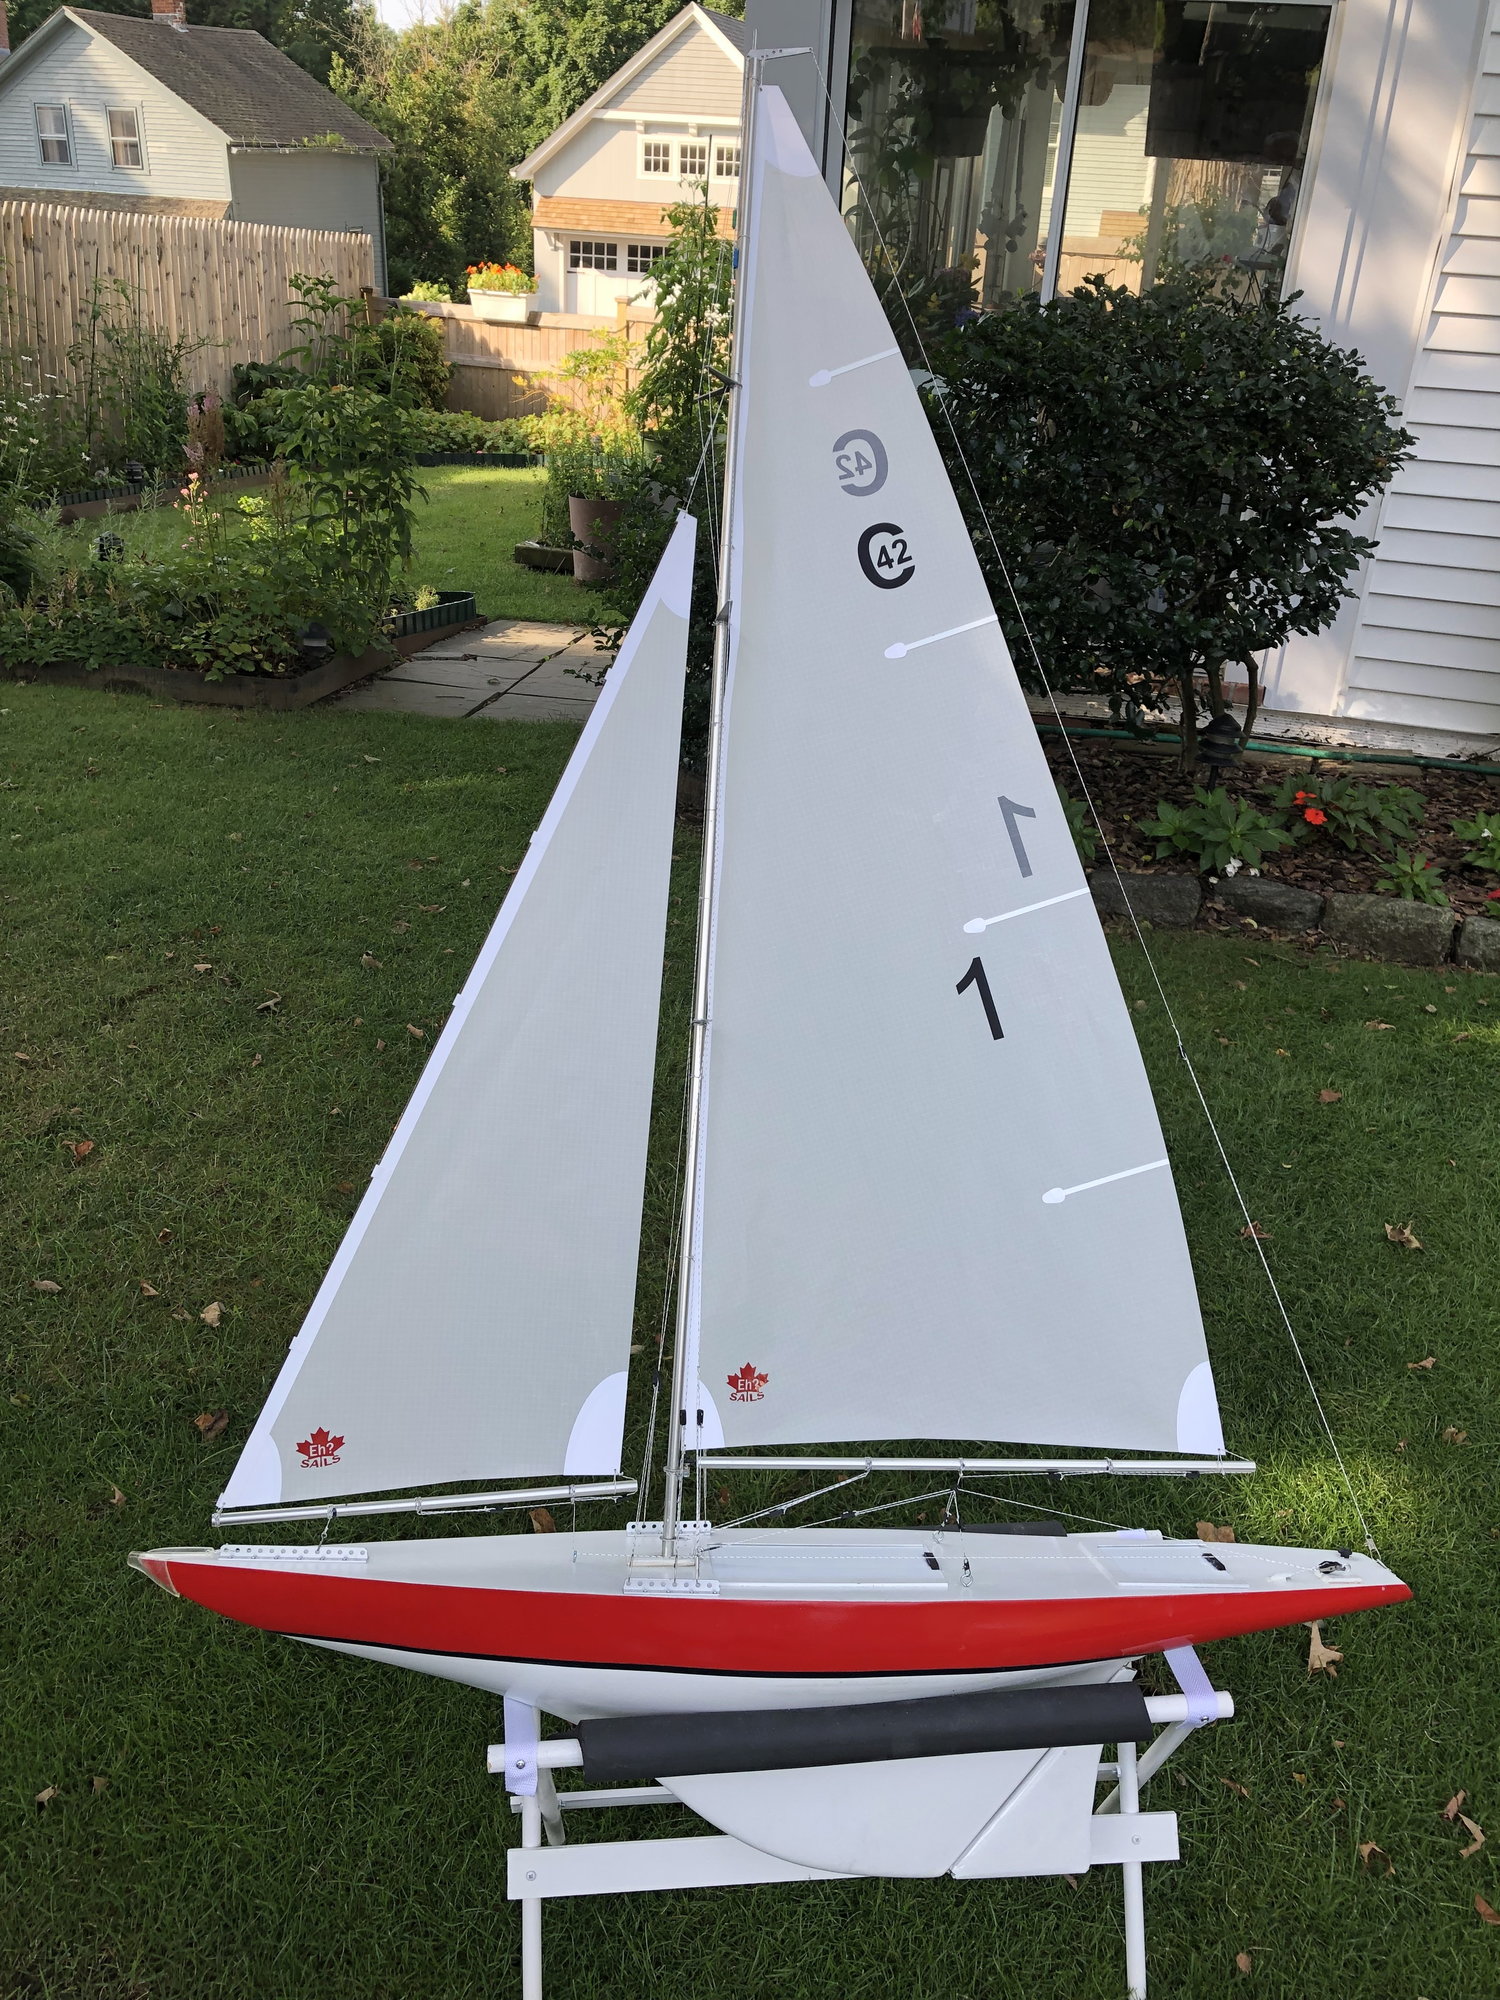 model sailboat racing